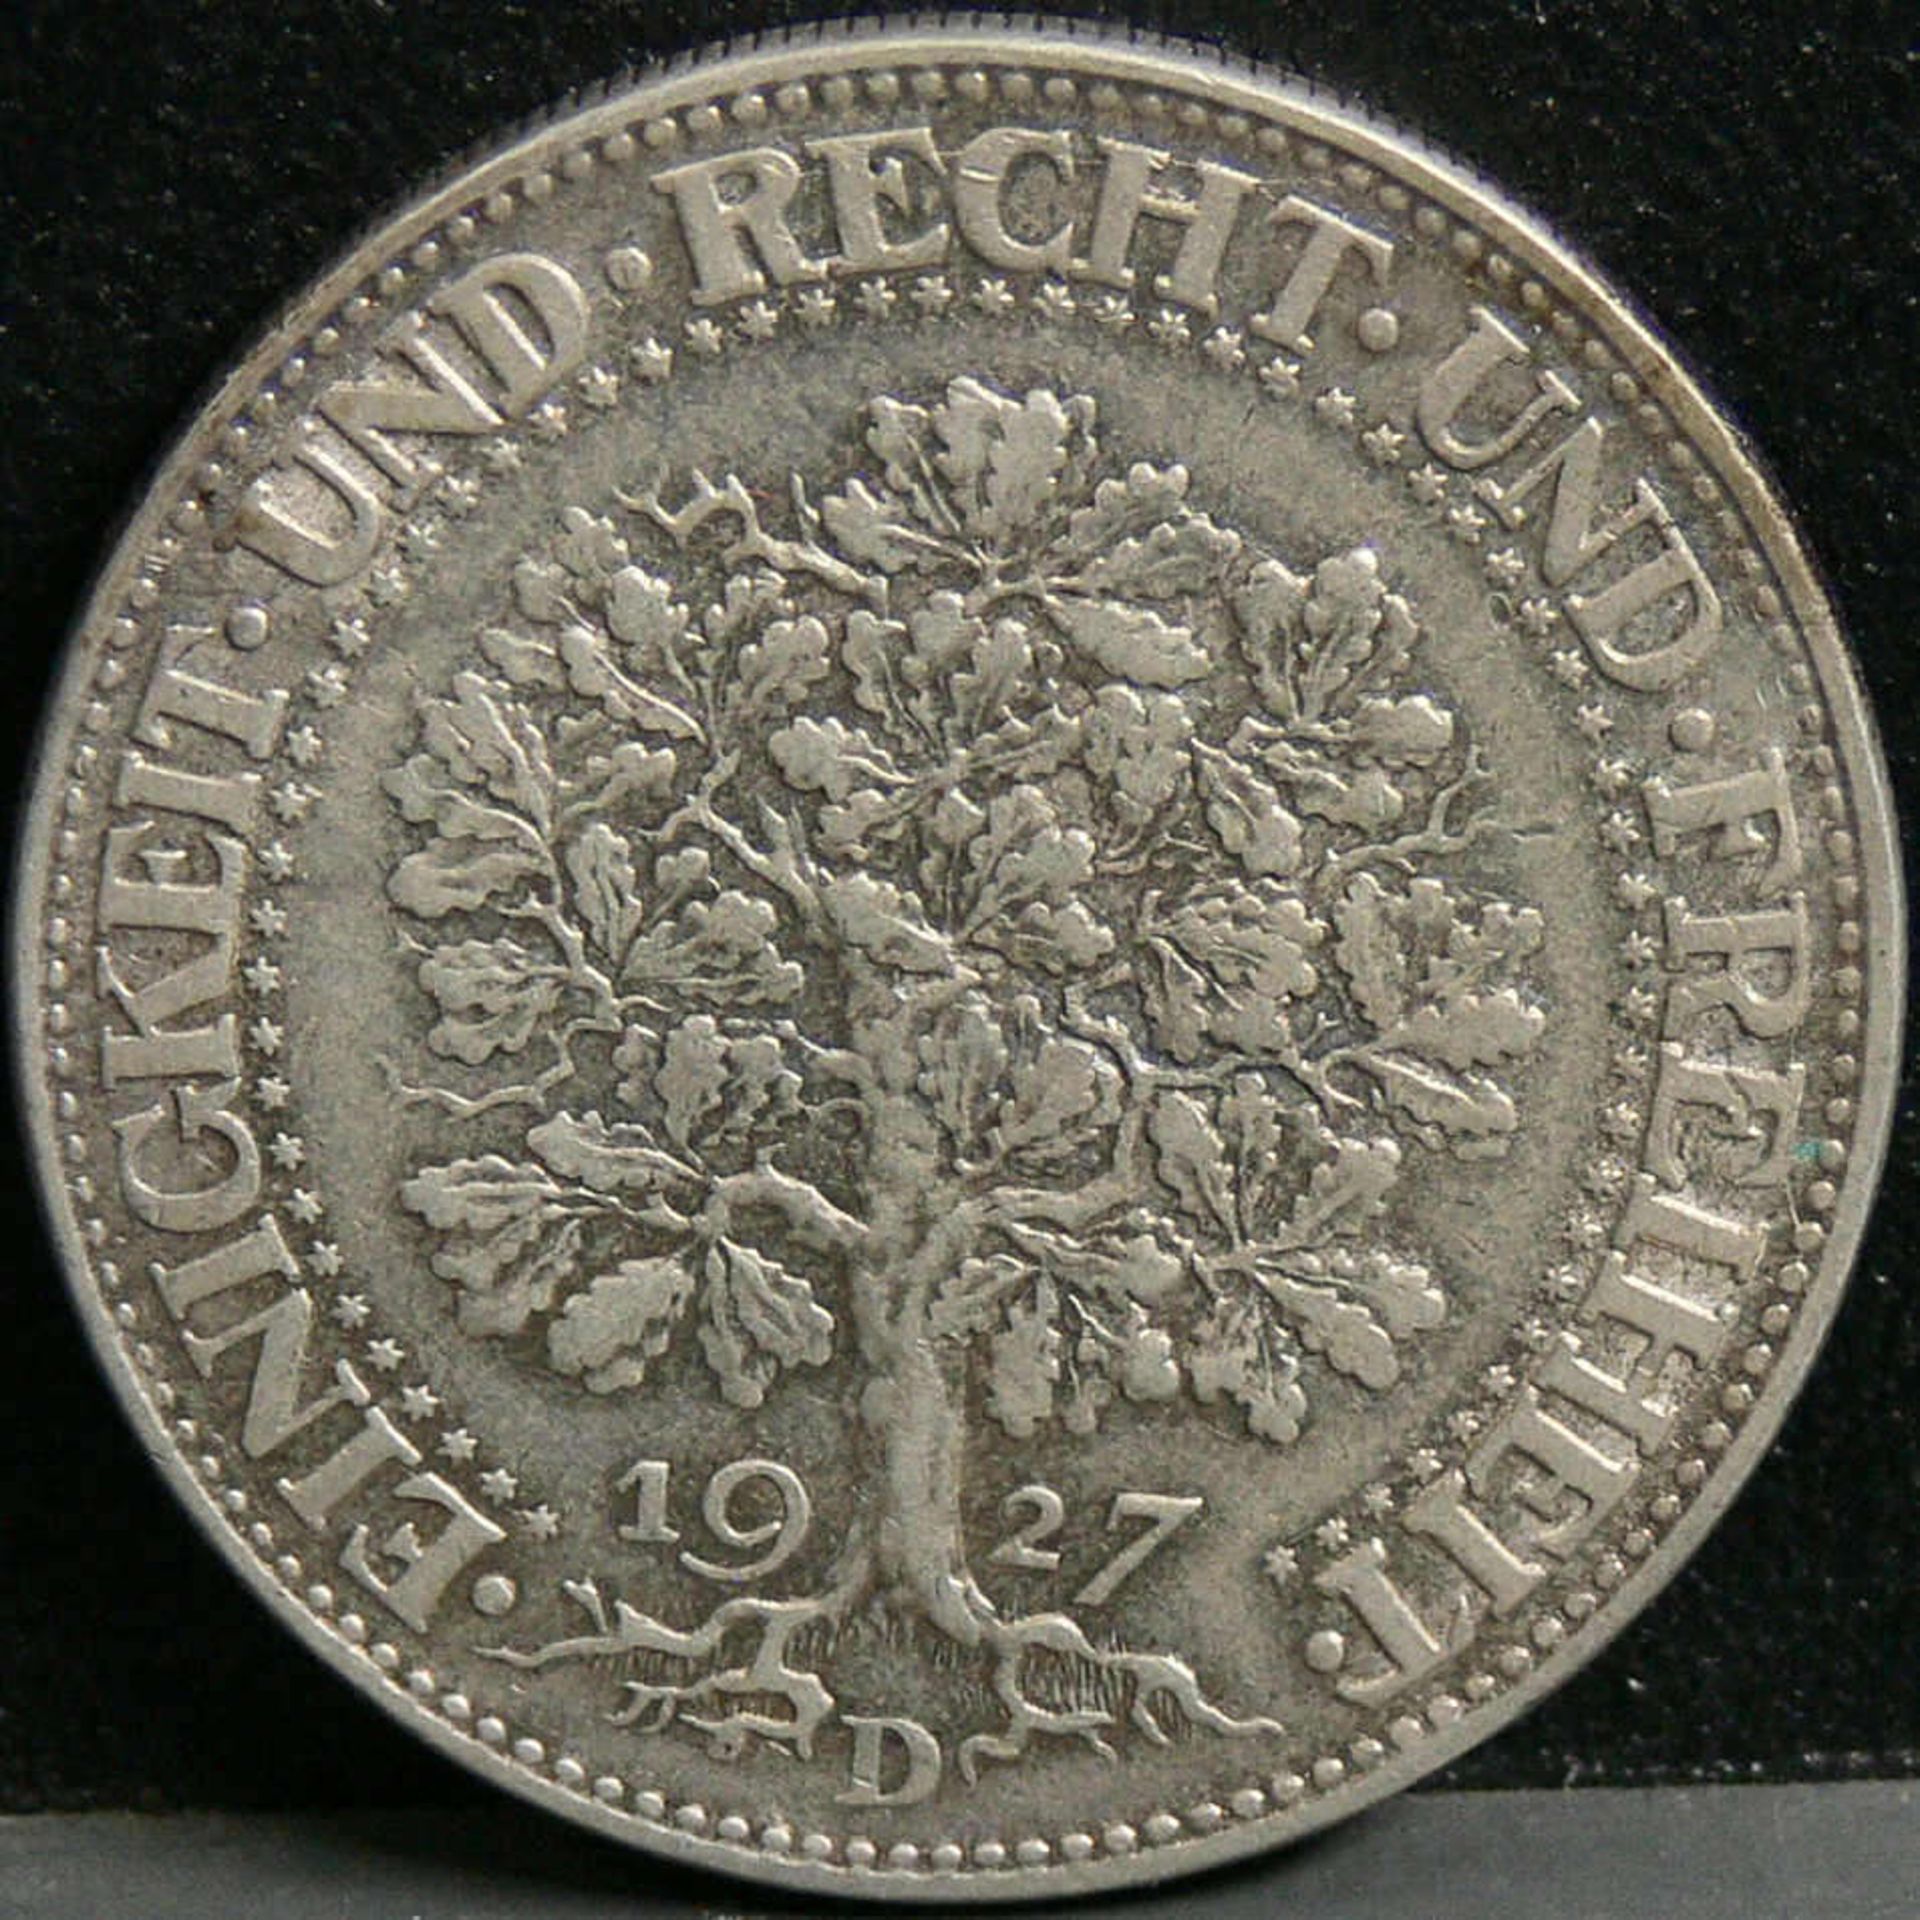 Deutsches Reich 1927 D, fünf Reichsmark - Silbermünze "Eichbaum". Gewicht: 25 g, Durchmesser: 36 mm.